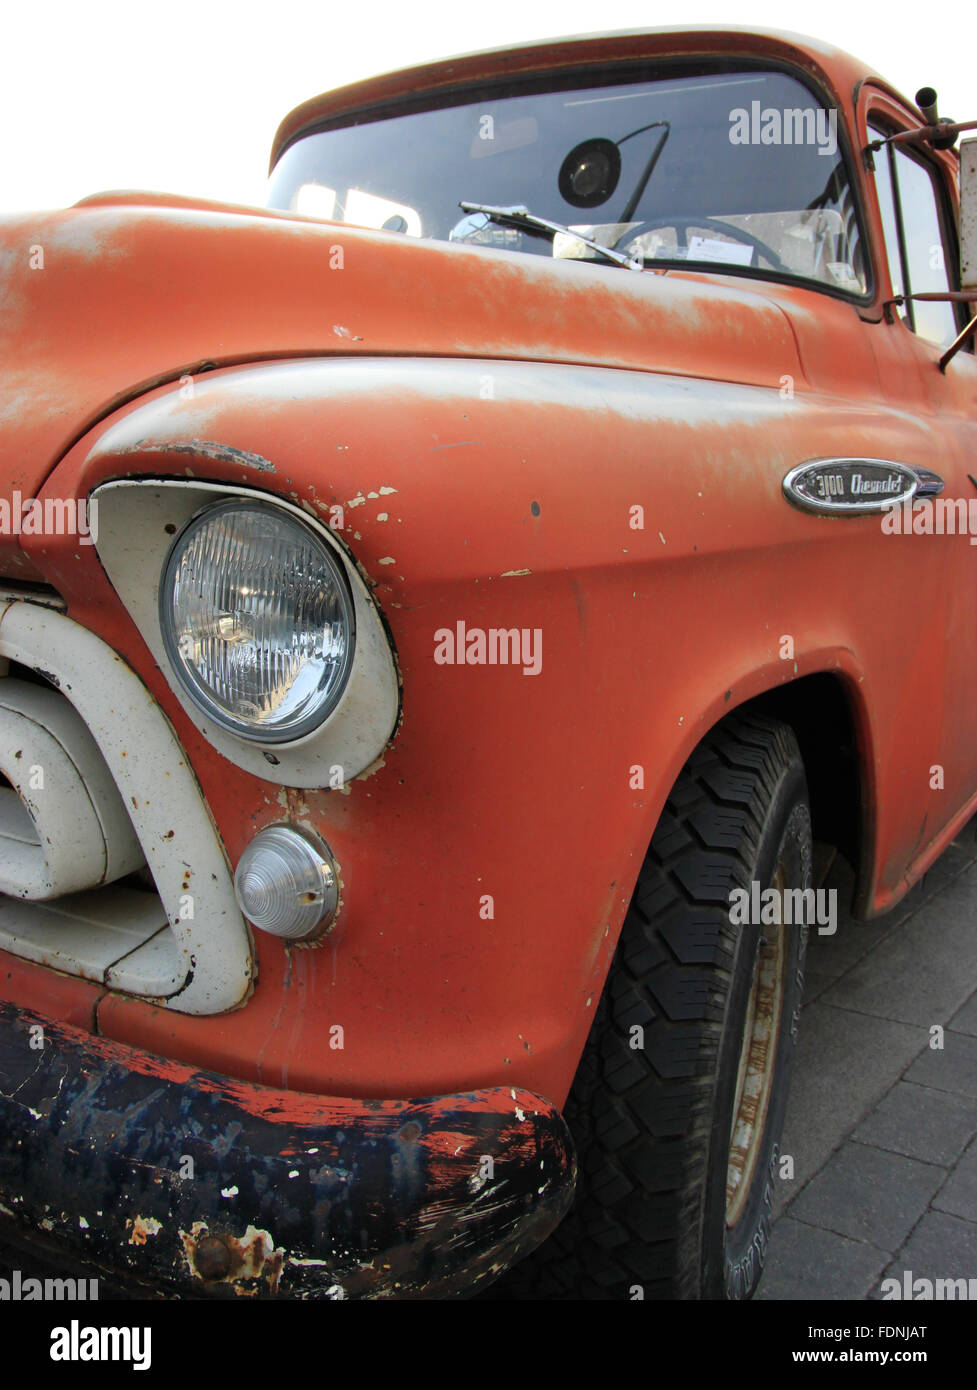 orange rat look American fifties 1950s pick up truck Chevrolet 5100 Stock Photo